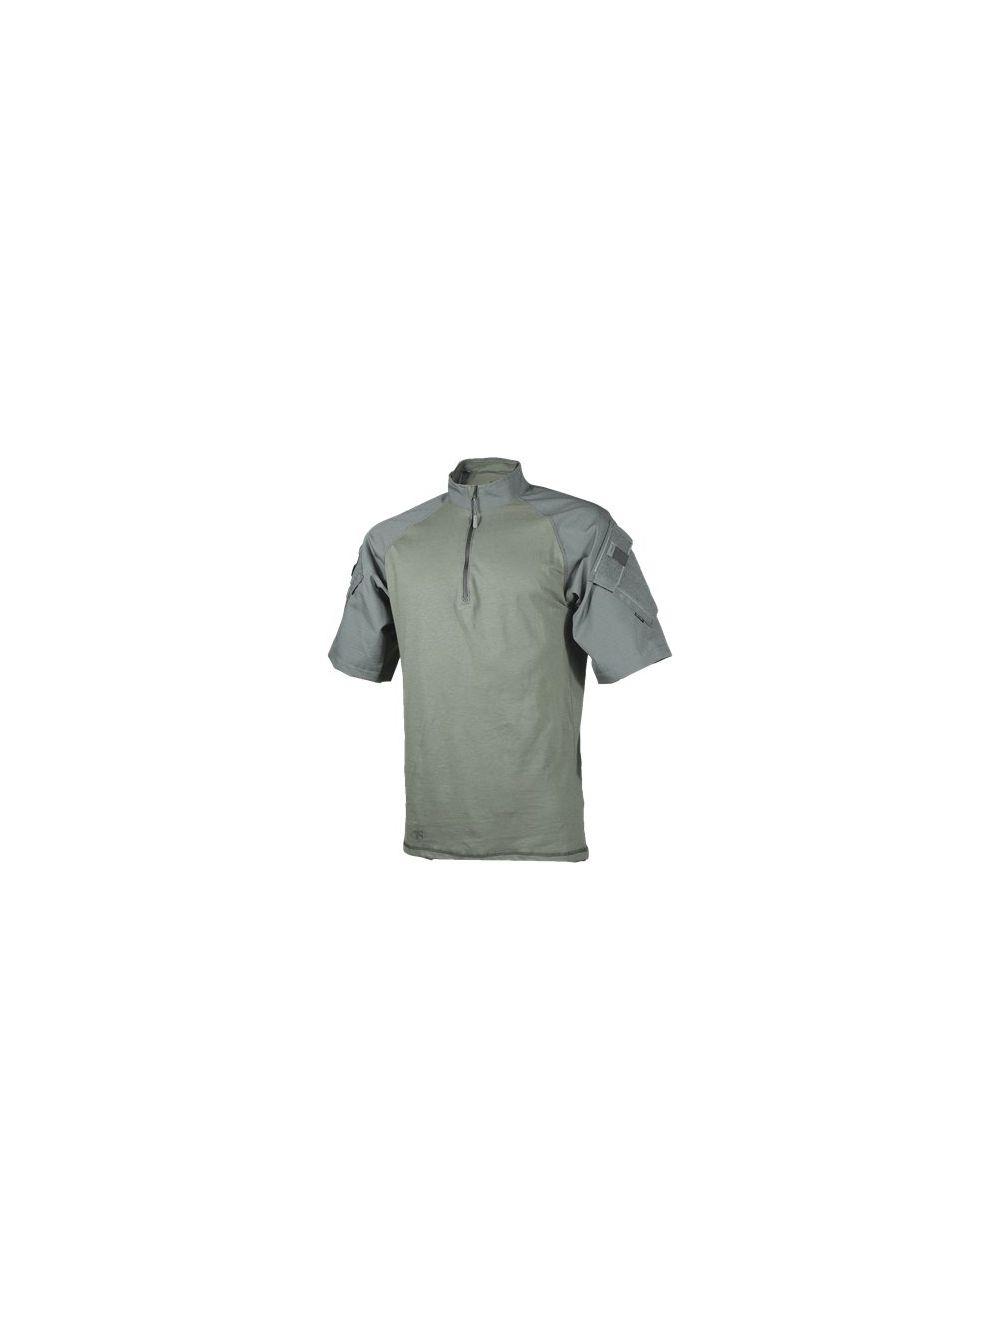 T.R.U. 1/4 Zip Combat Shirt